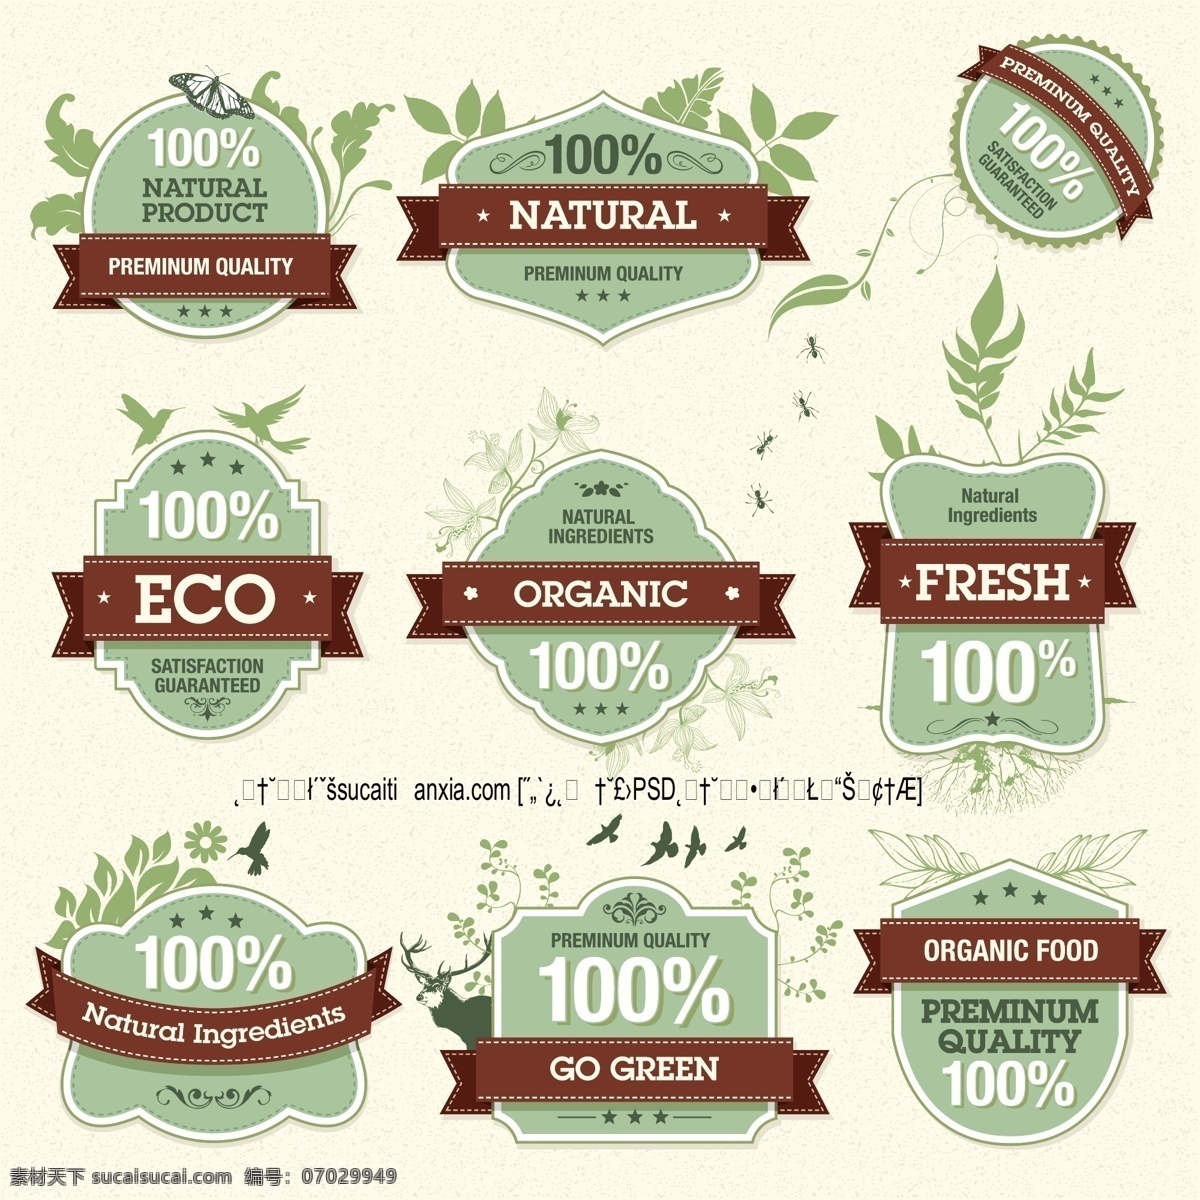 自然生态 有机 食品 标签 矢量 蝴蝶 丝带 贴纸 小鸟剪影 植物花纹 食品标贴 绿色食品商标 矢量图 其他矢量图